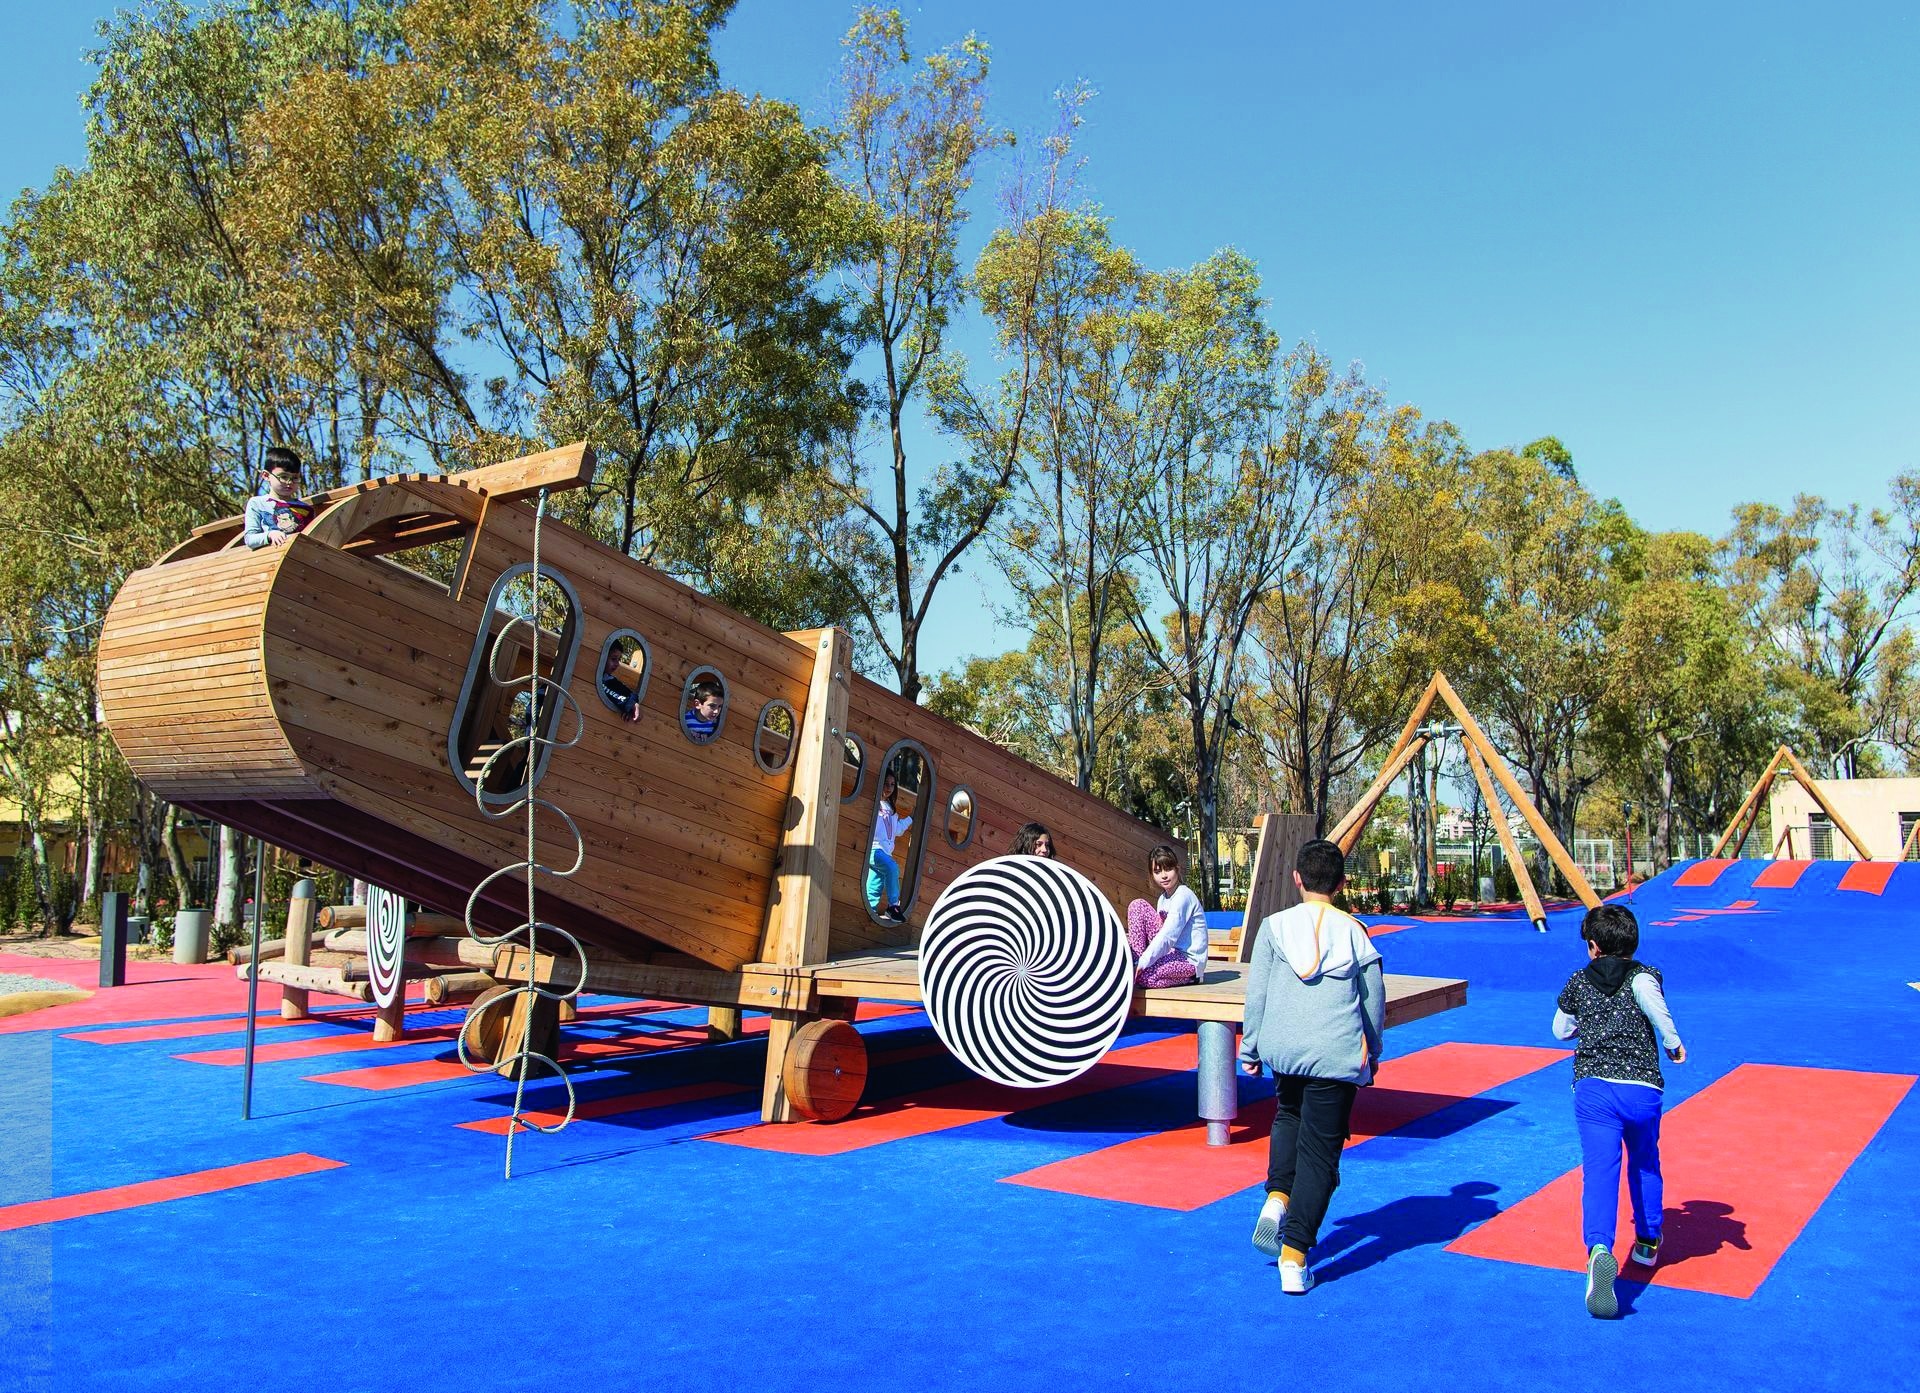 Mehrere Kinder spielen im Freien auf einem großen Holzflugzeug auf einem blau-orangenen Boden.